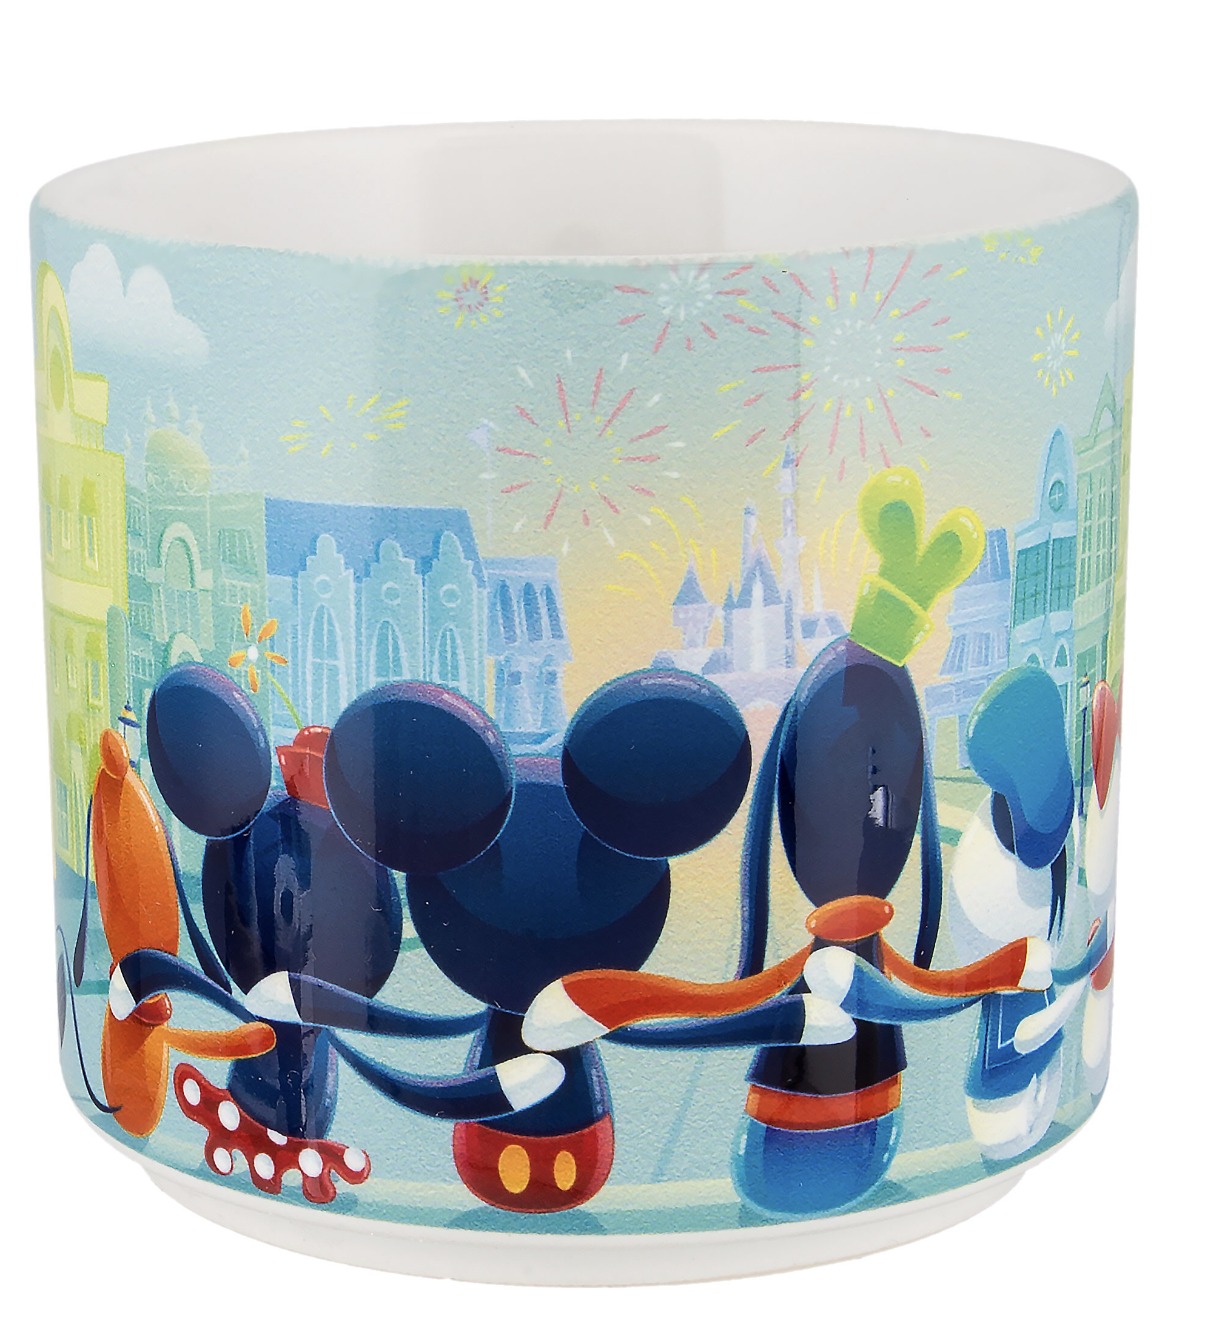 Disney Parks Magic on Main Street Mug by Fan Mickey Minnie Donald Daisy Goofy